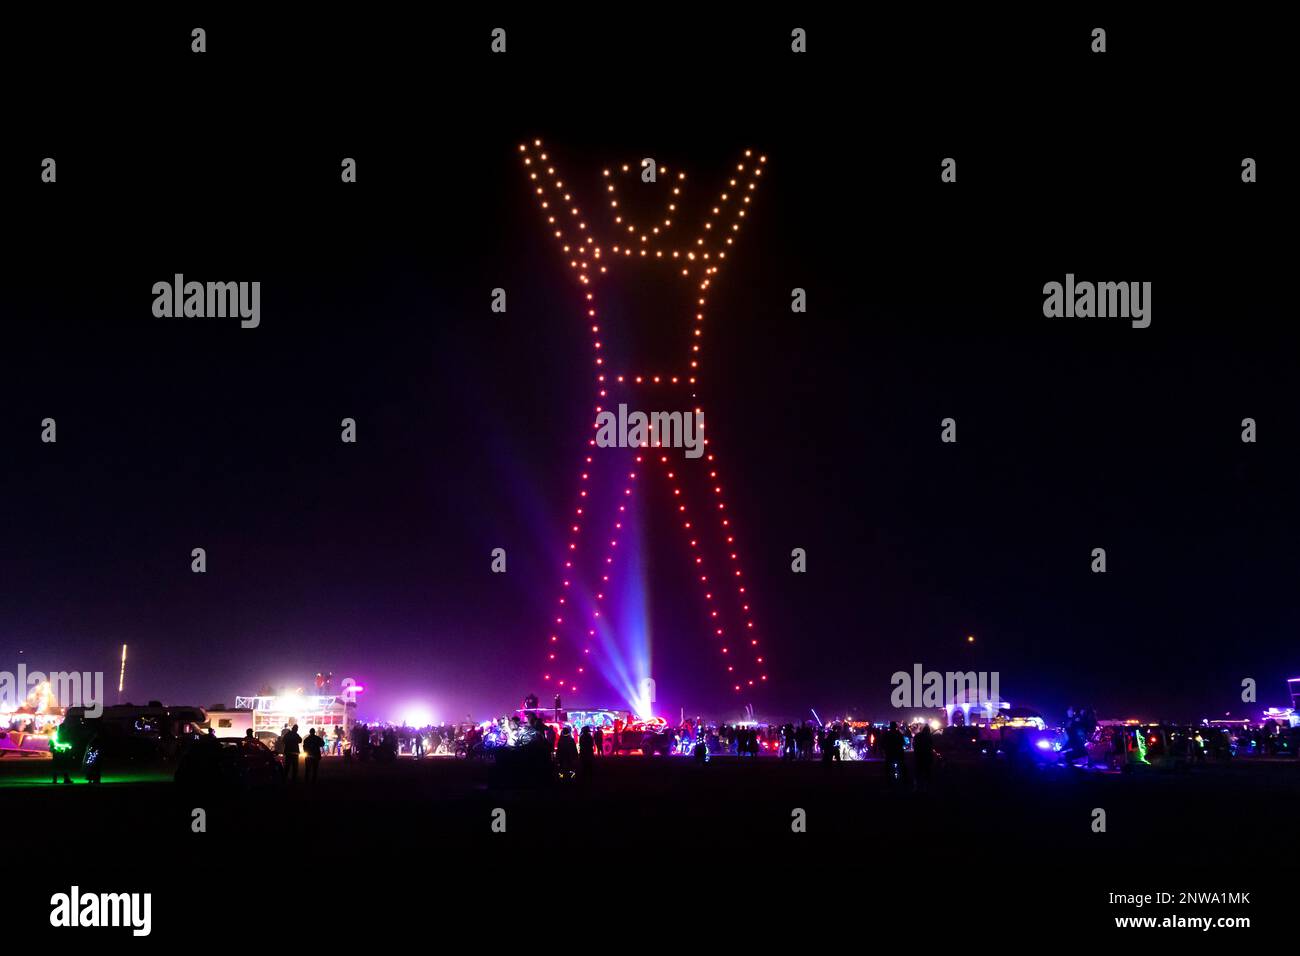 Burning Man fu cancellato nel 2021, ma migliaia di persone viaggiarono comunque verso il Black Rock Desert. Al posto di una "masterizzazione", gli artisti hanno messo in scena un massiccio spettacolo di droni Foto Stock